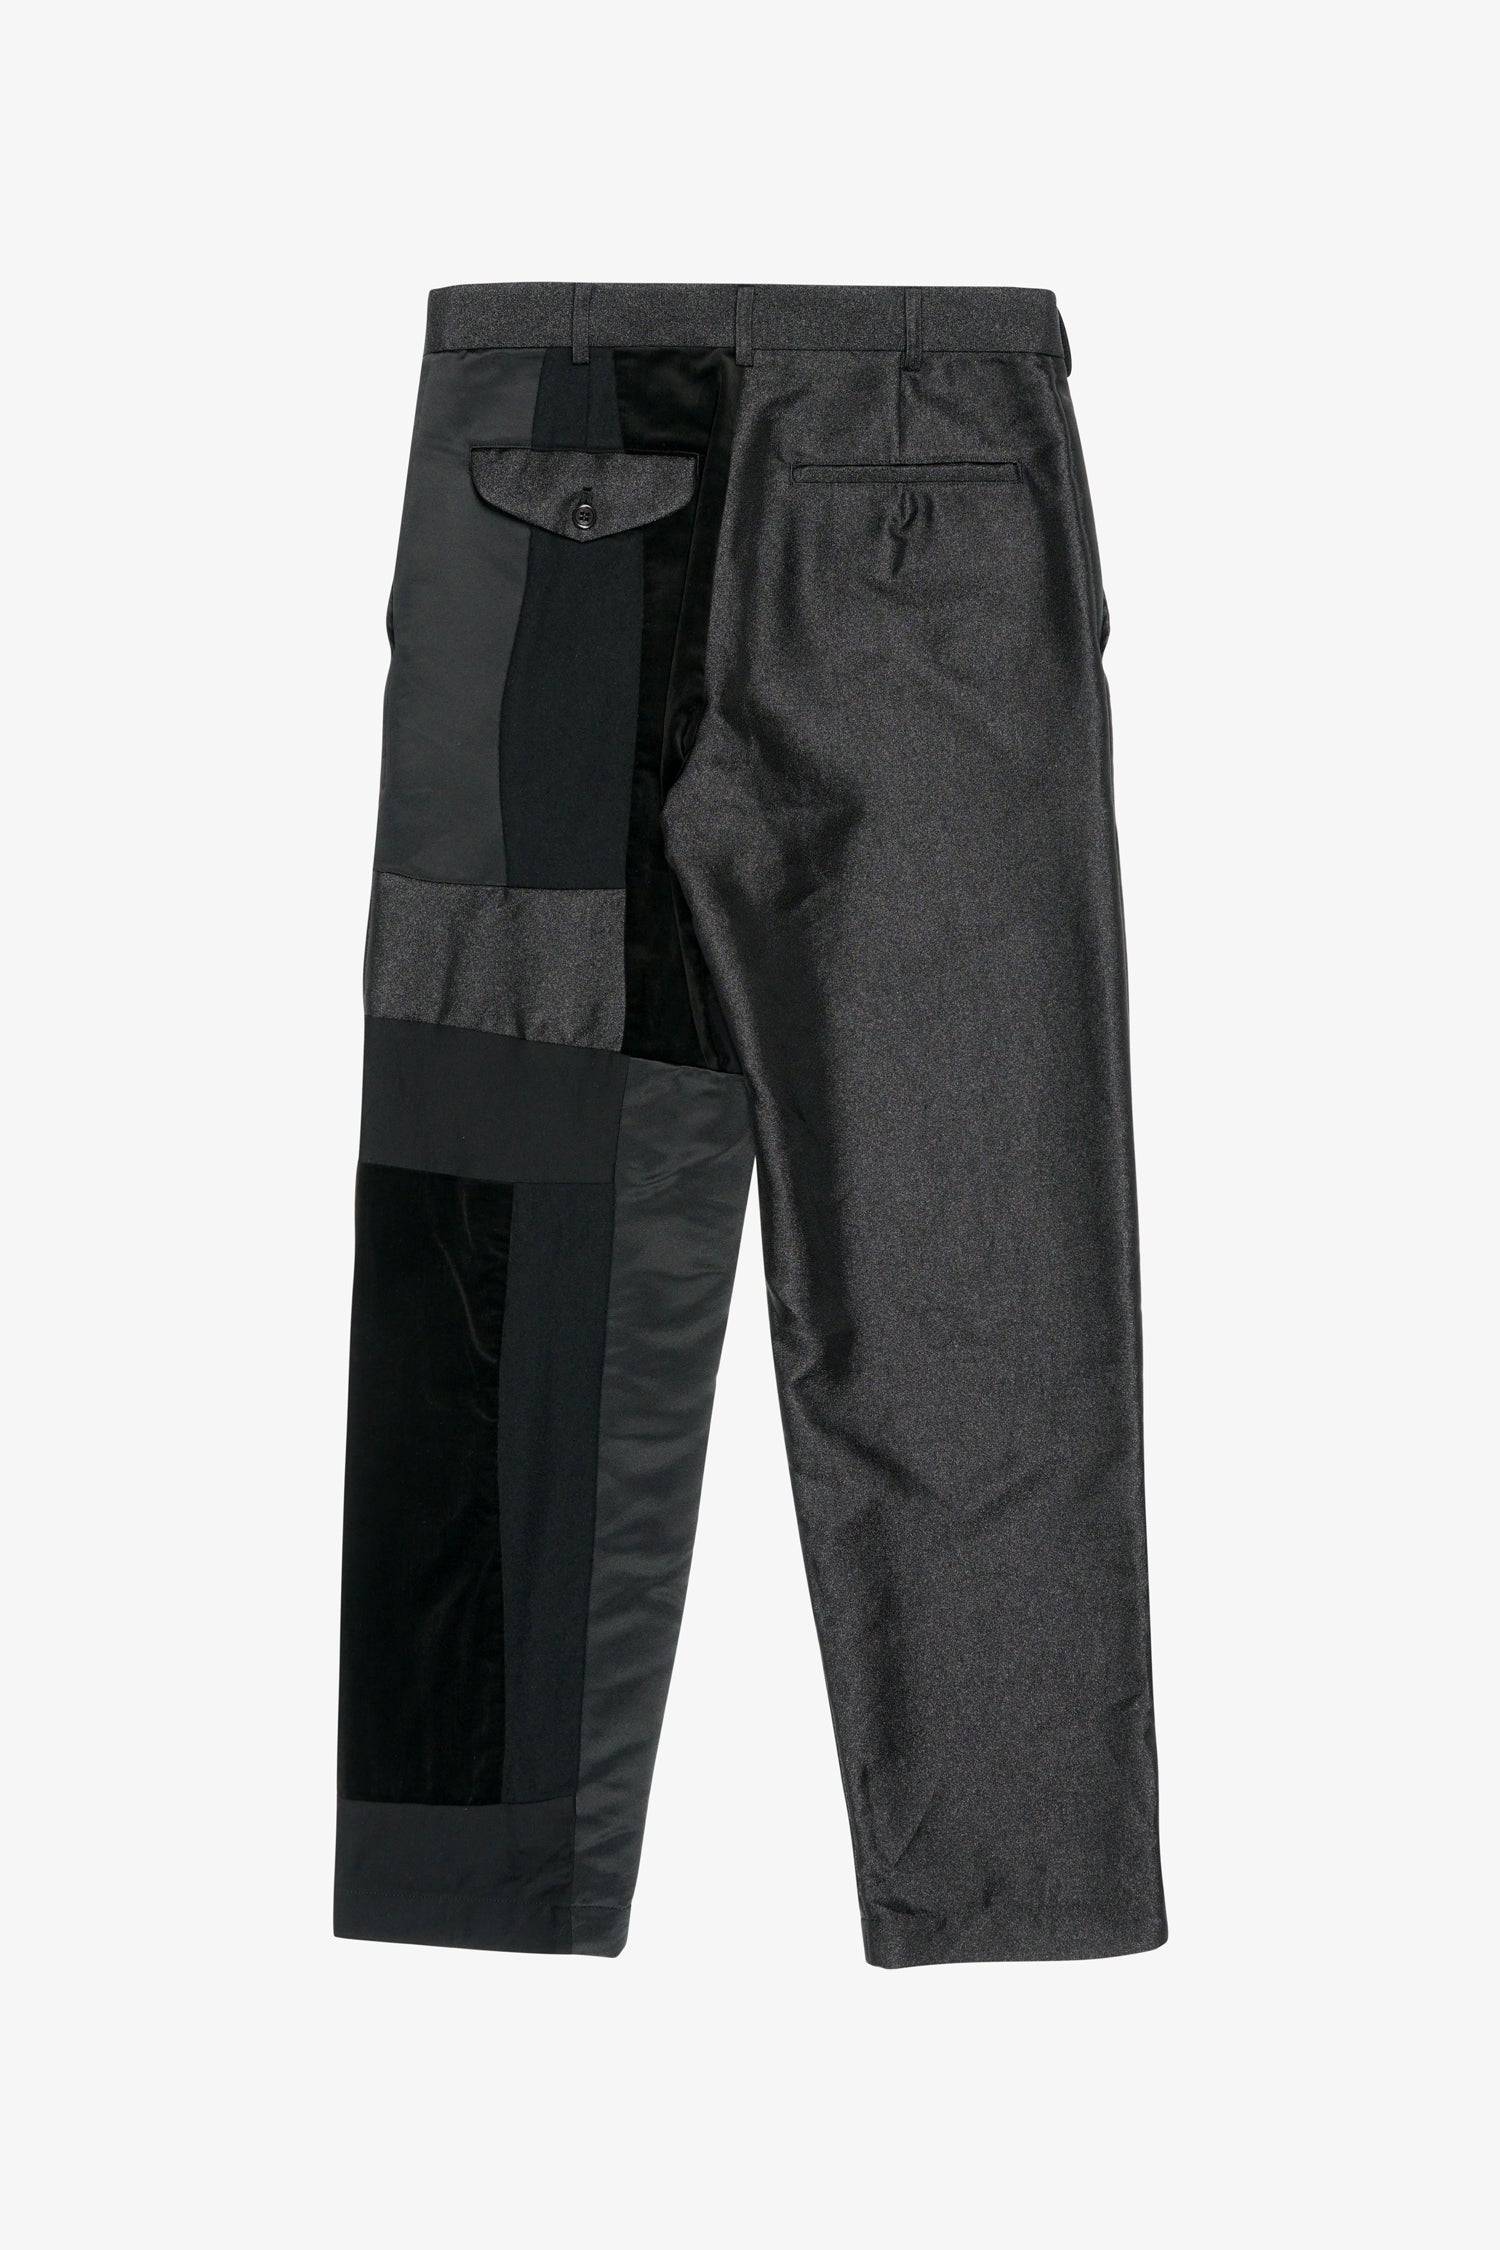 Selectshop FRAME - COMME DES GARÇONS BLACK Contrast Patchwork Trousers Bottoms Dubai